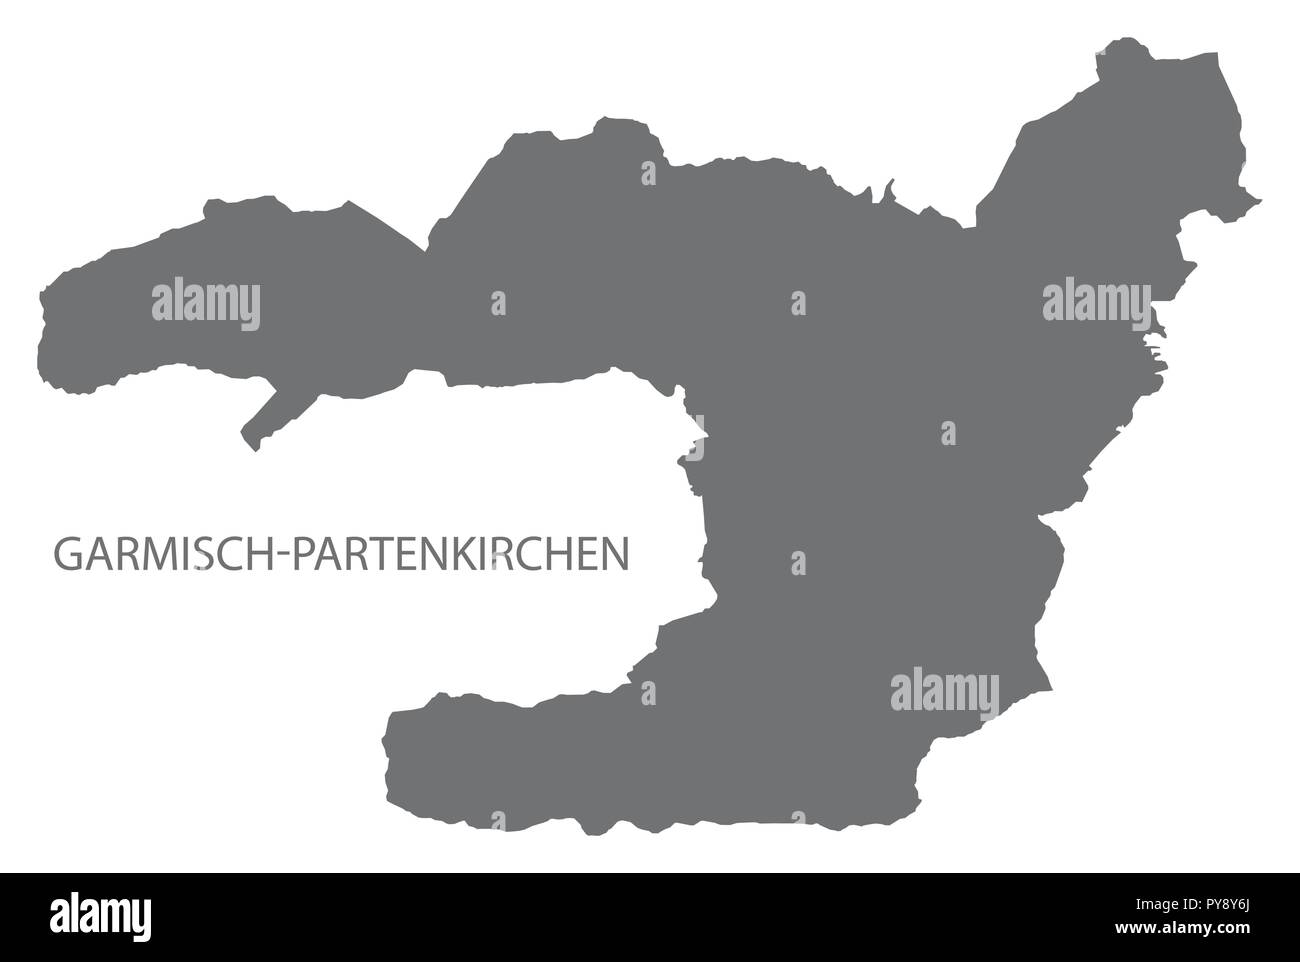 Garmisch-Partenkirchen Verwaltung Lageplan Grau Abbildung Silhouette Stock Vektor